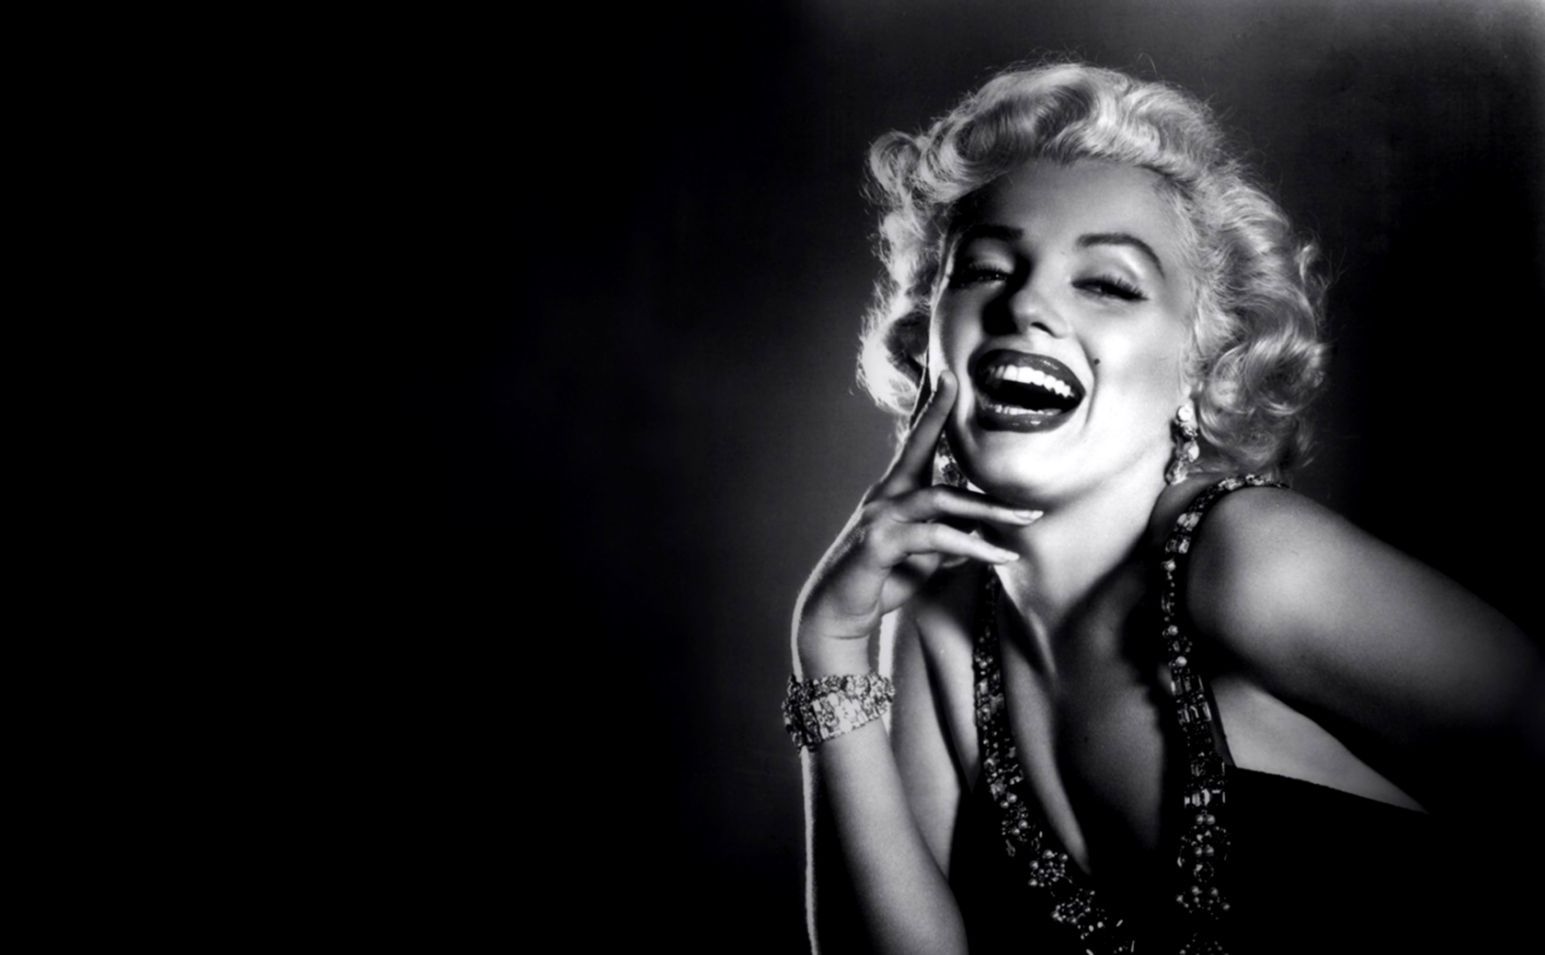 Fondos de pantalla de Marilyn Monroe | Premios de Fondos